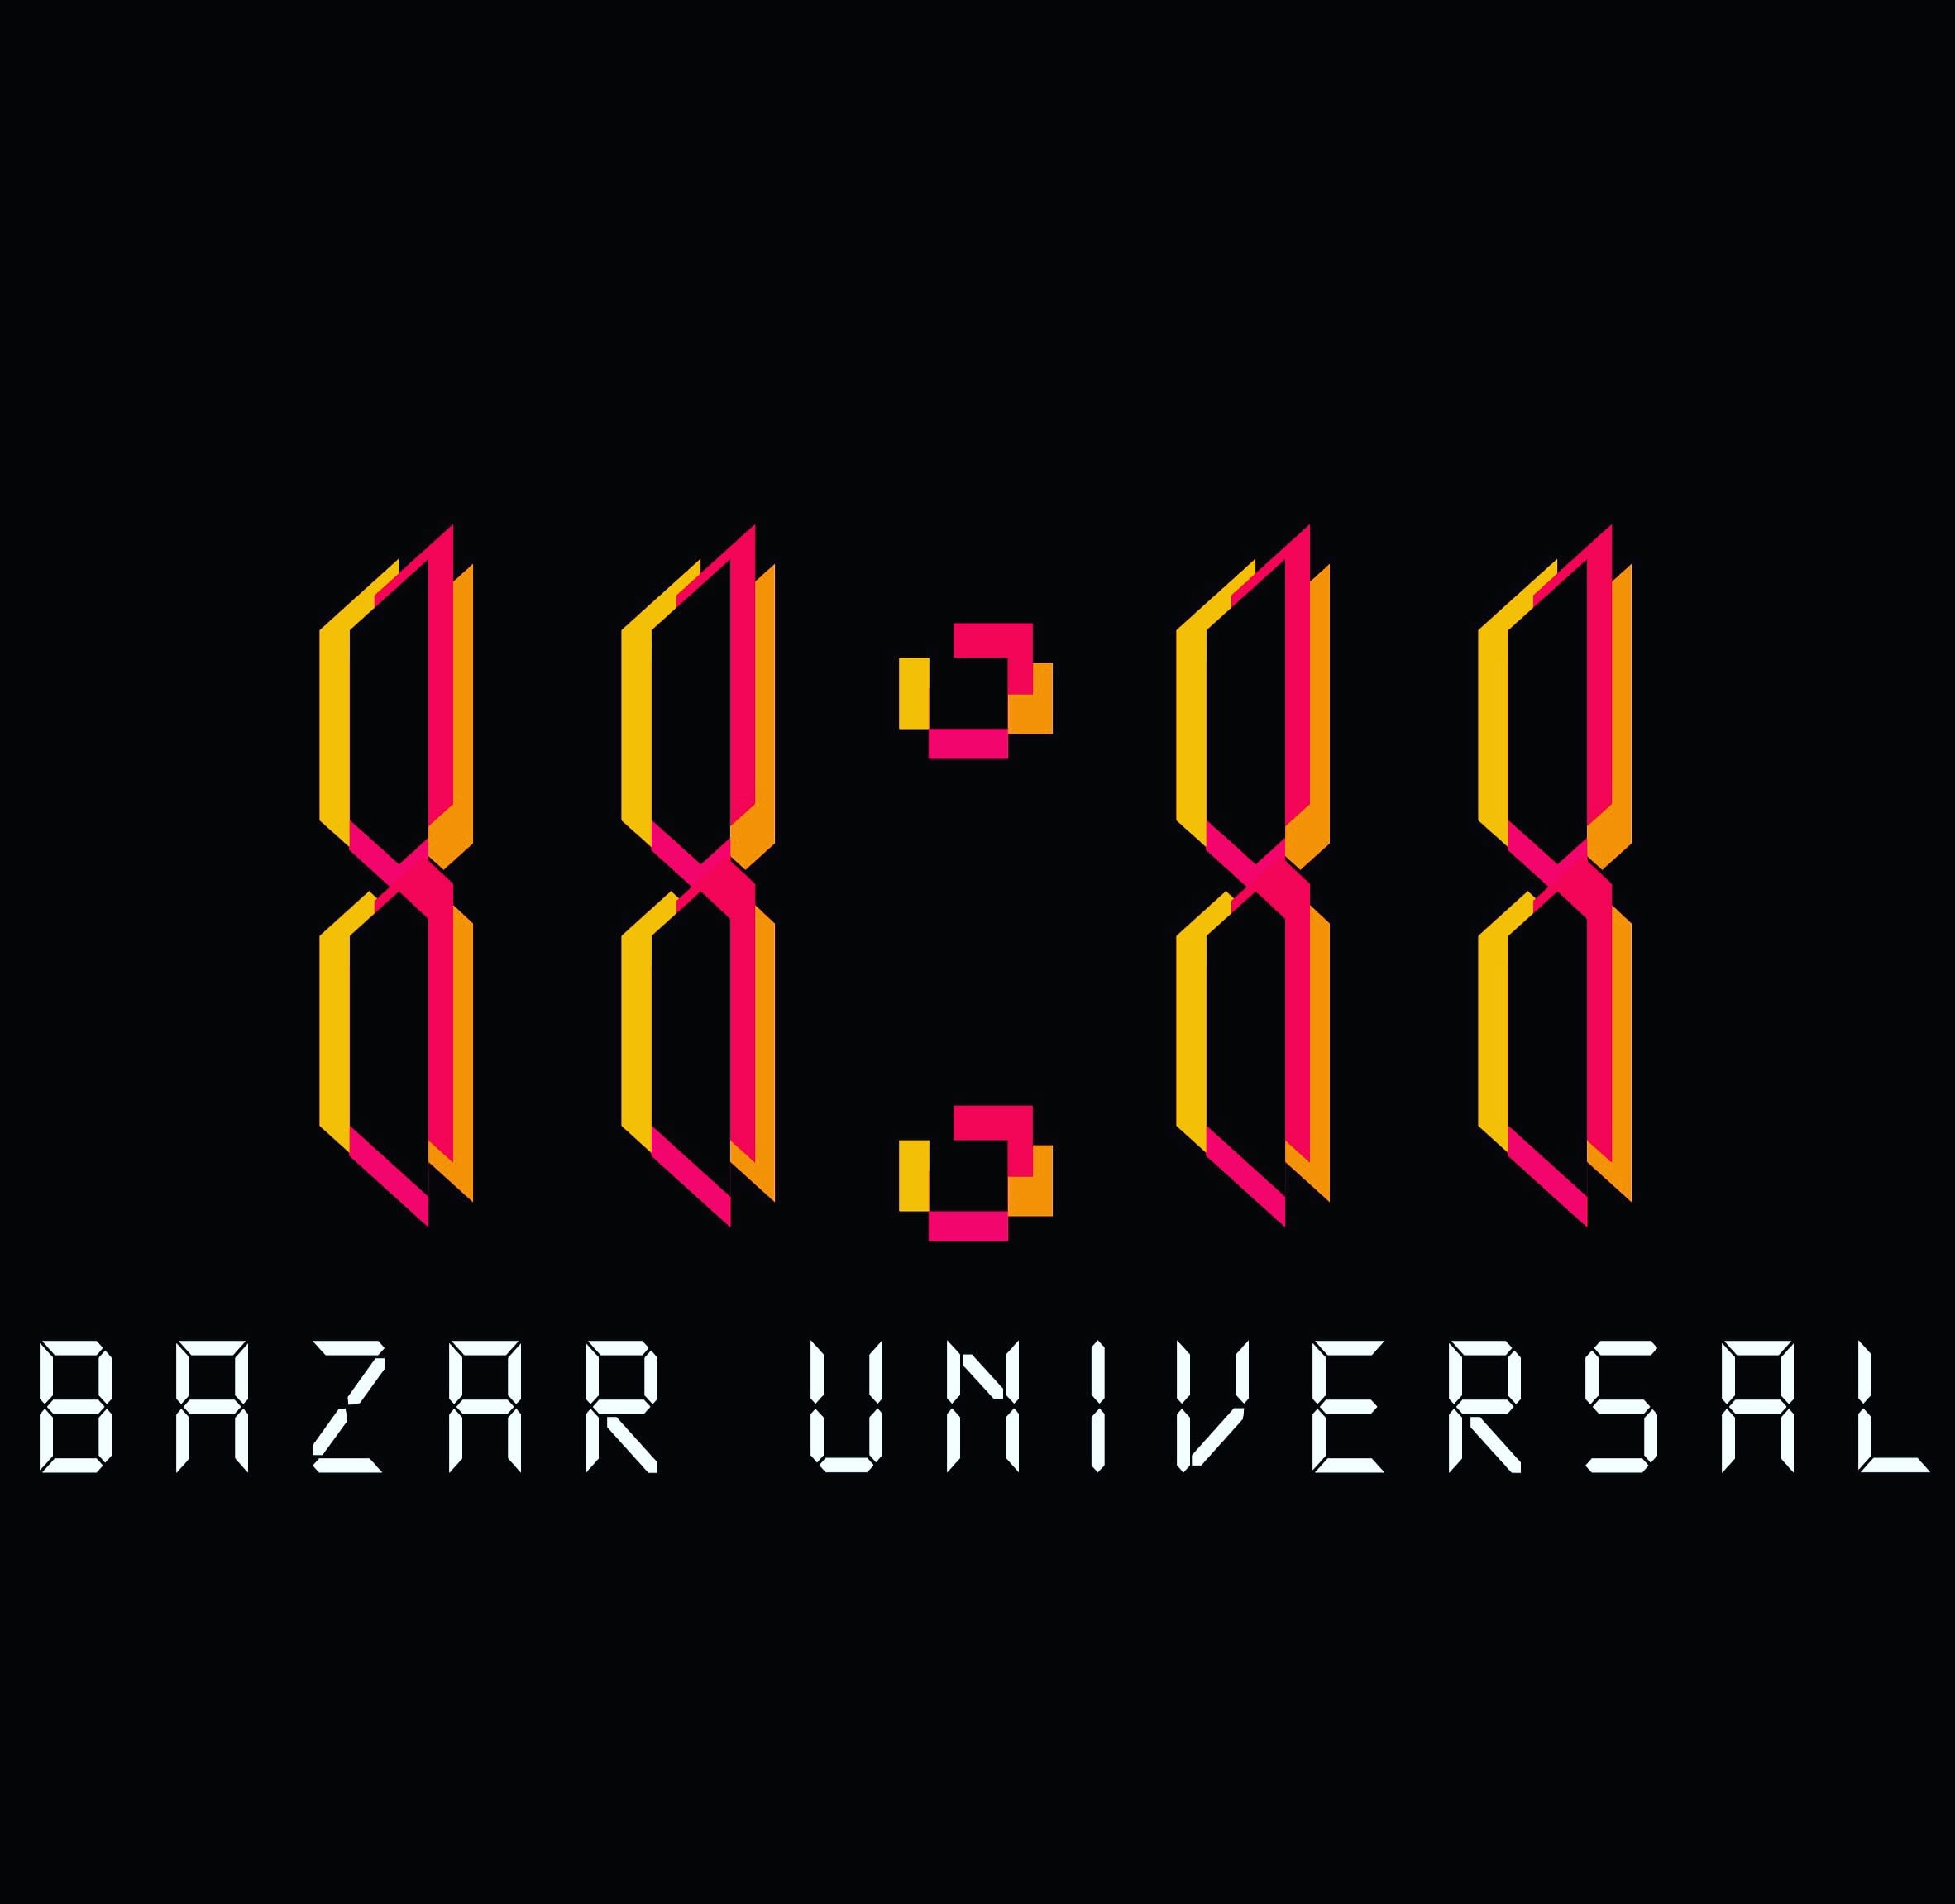 11:11 Bazar